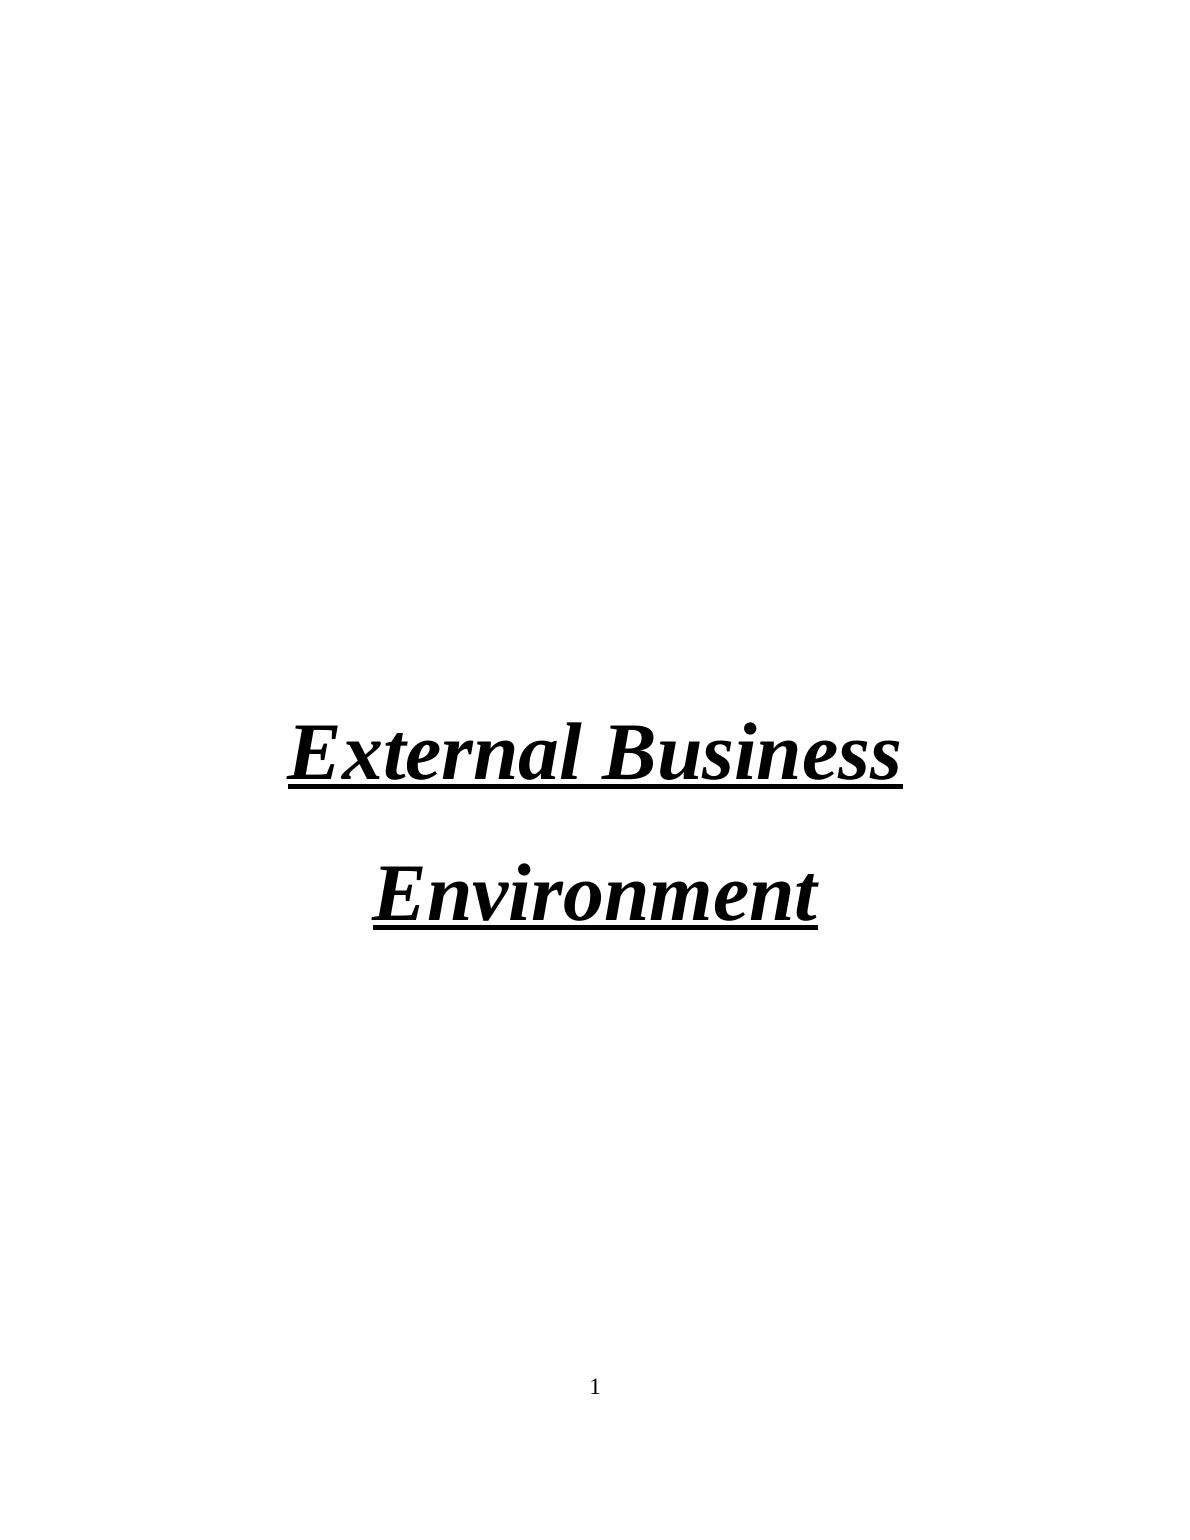 External Business Environment Assignment_1